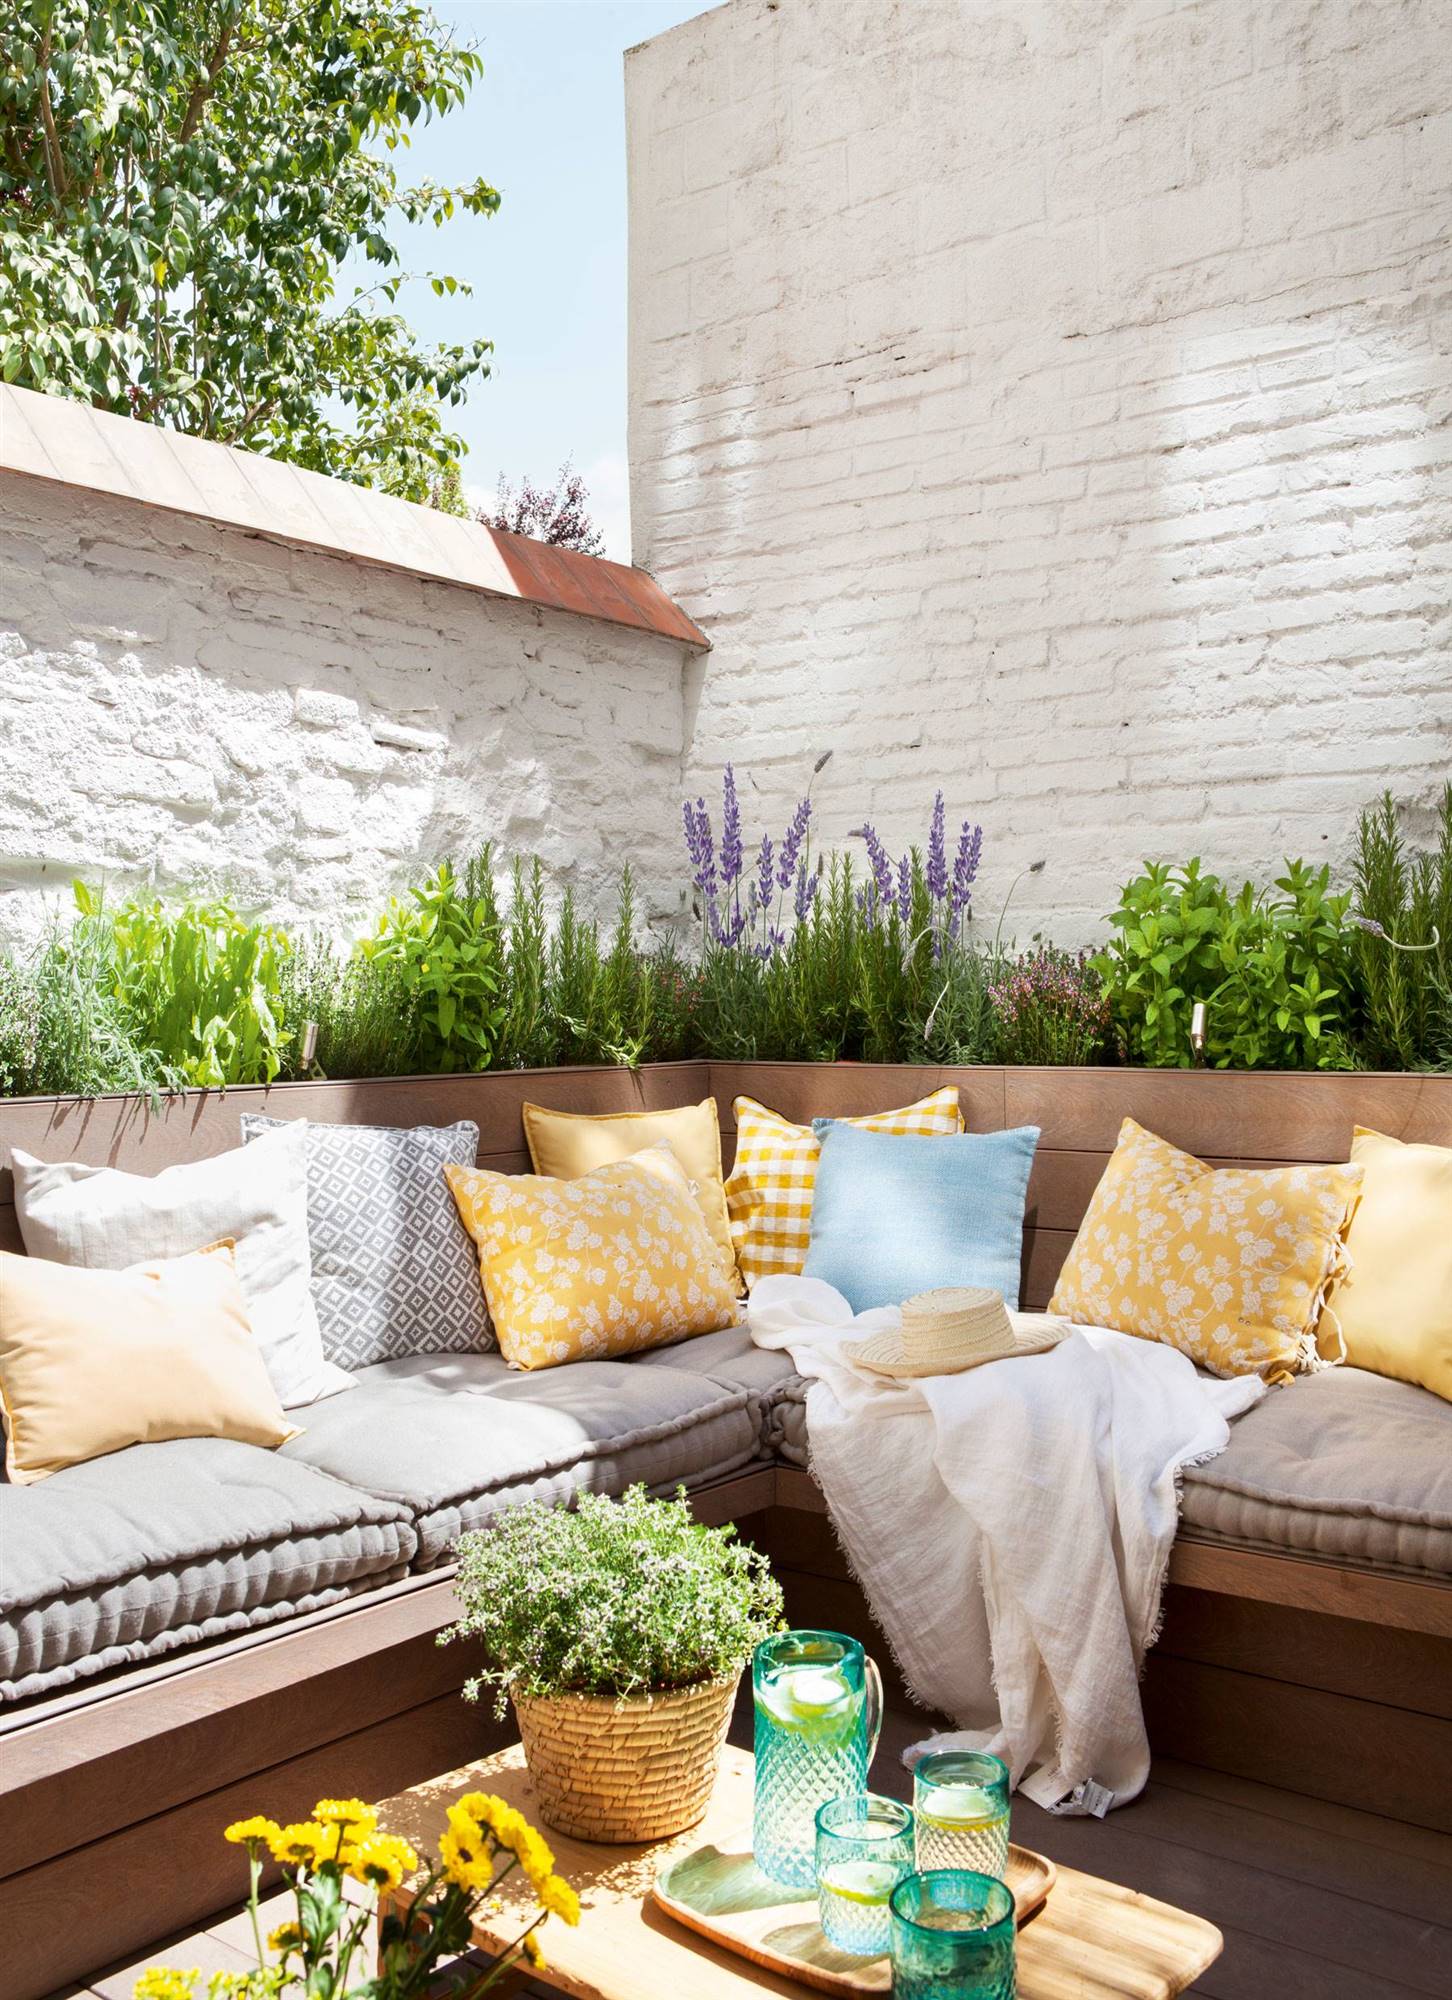 Terraza con banco en "L", paredes blancas y jardineras con plantas aromáticas_00433266